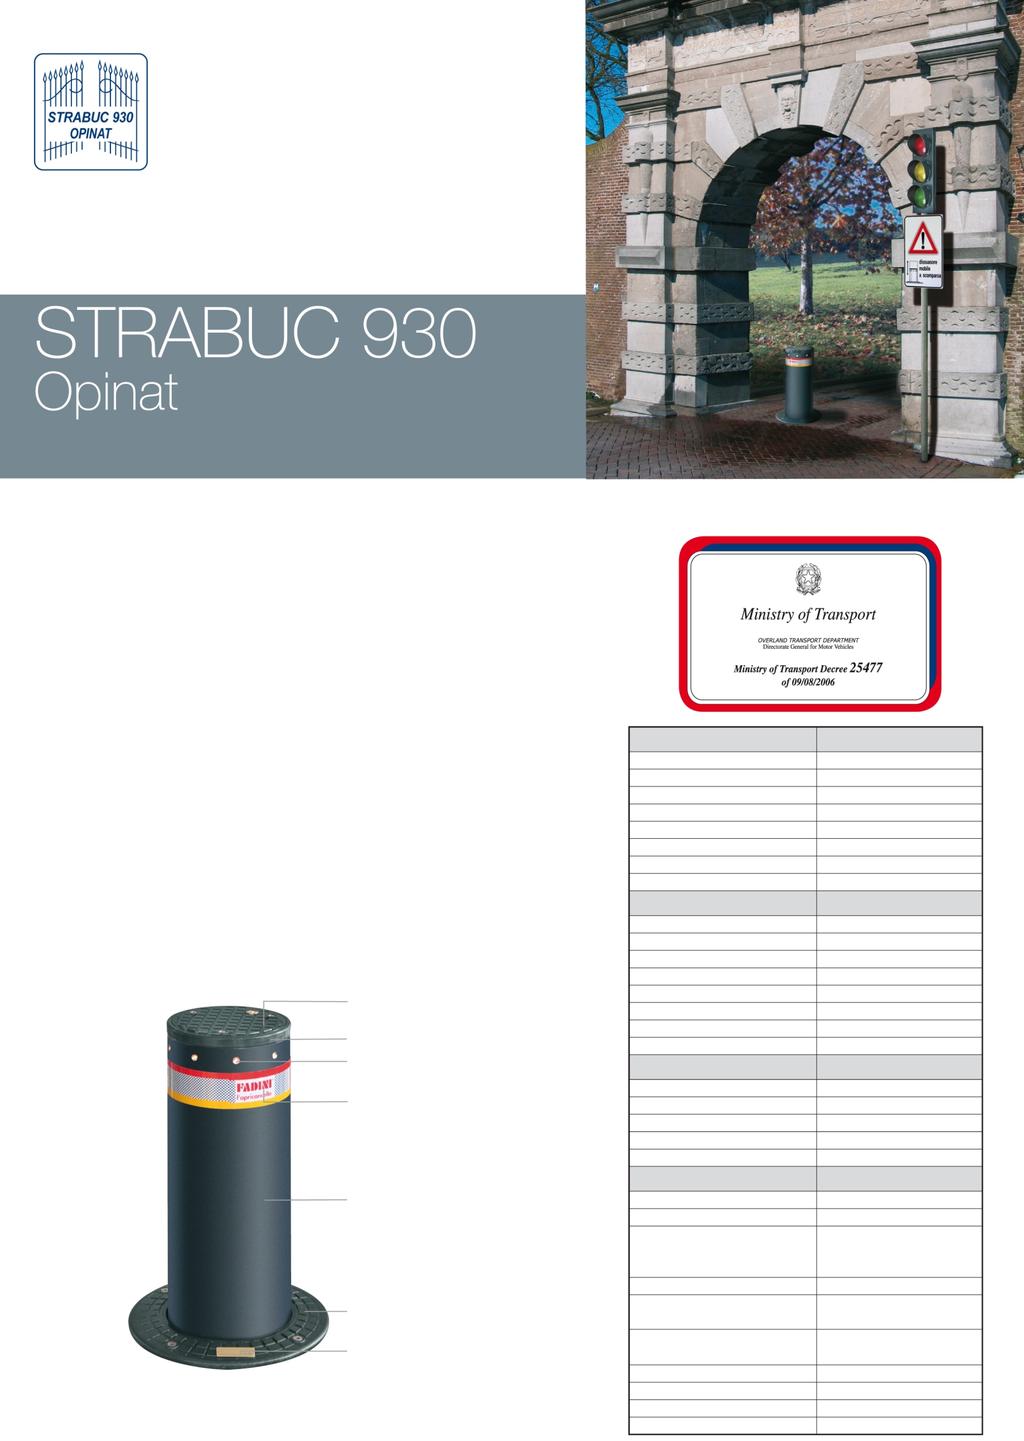 Chowany, hydrauliczny s³upek blokady wjazdu Strabuc 930 Opinat jest to wersja s³upka Strabuc 930 Pancerny z aprobat¹ Ministerstwa Transportu, przeznaczona do instalowania w miejscach publicznych